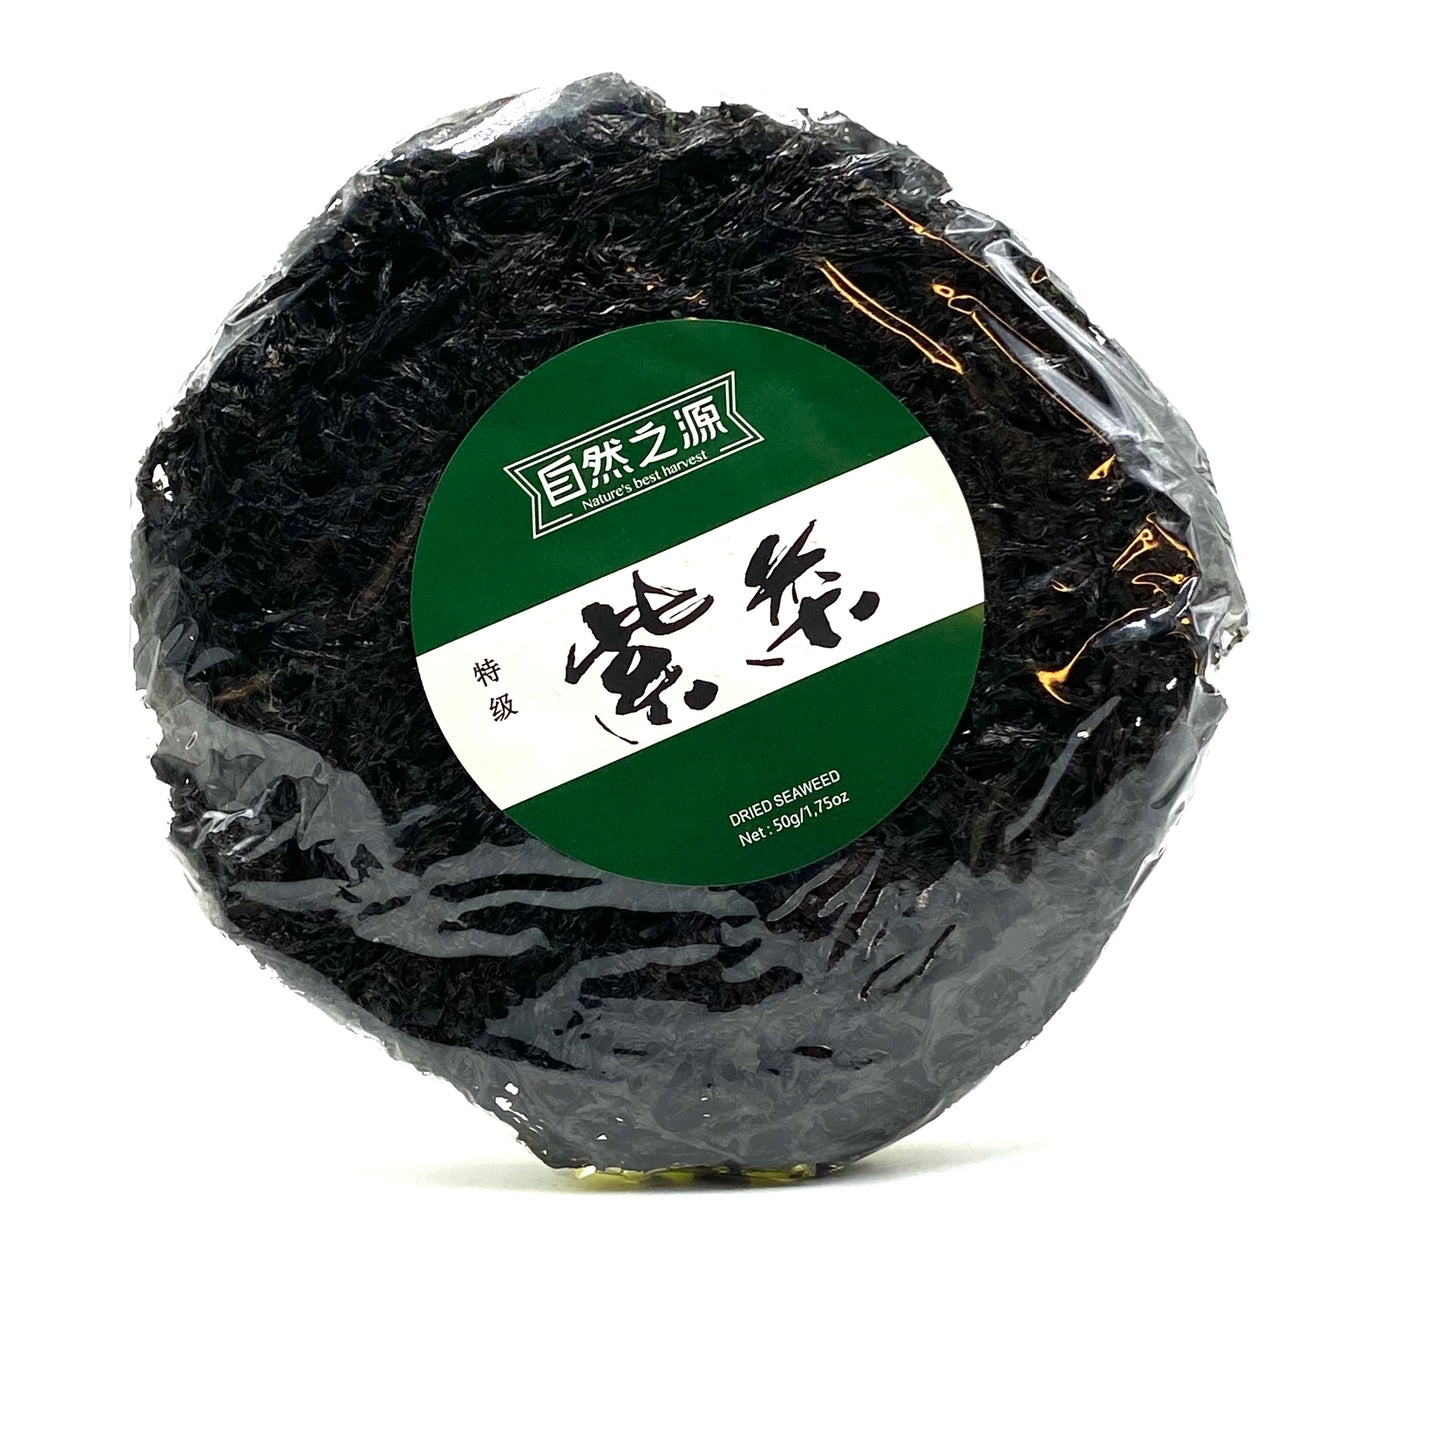 NBH Seaweed Tze-Choy-Beng 50g 自然之源紫菜